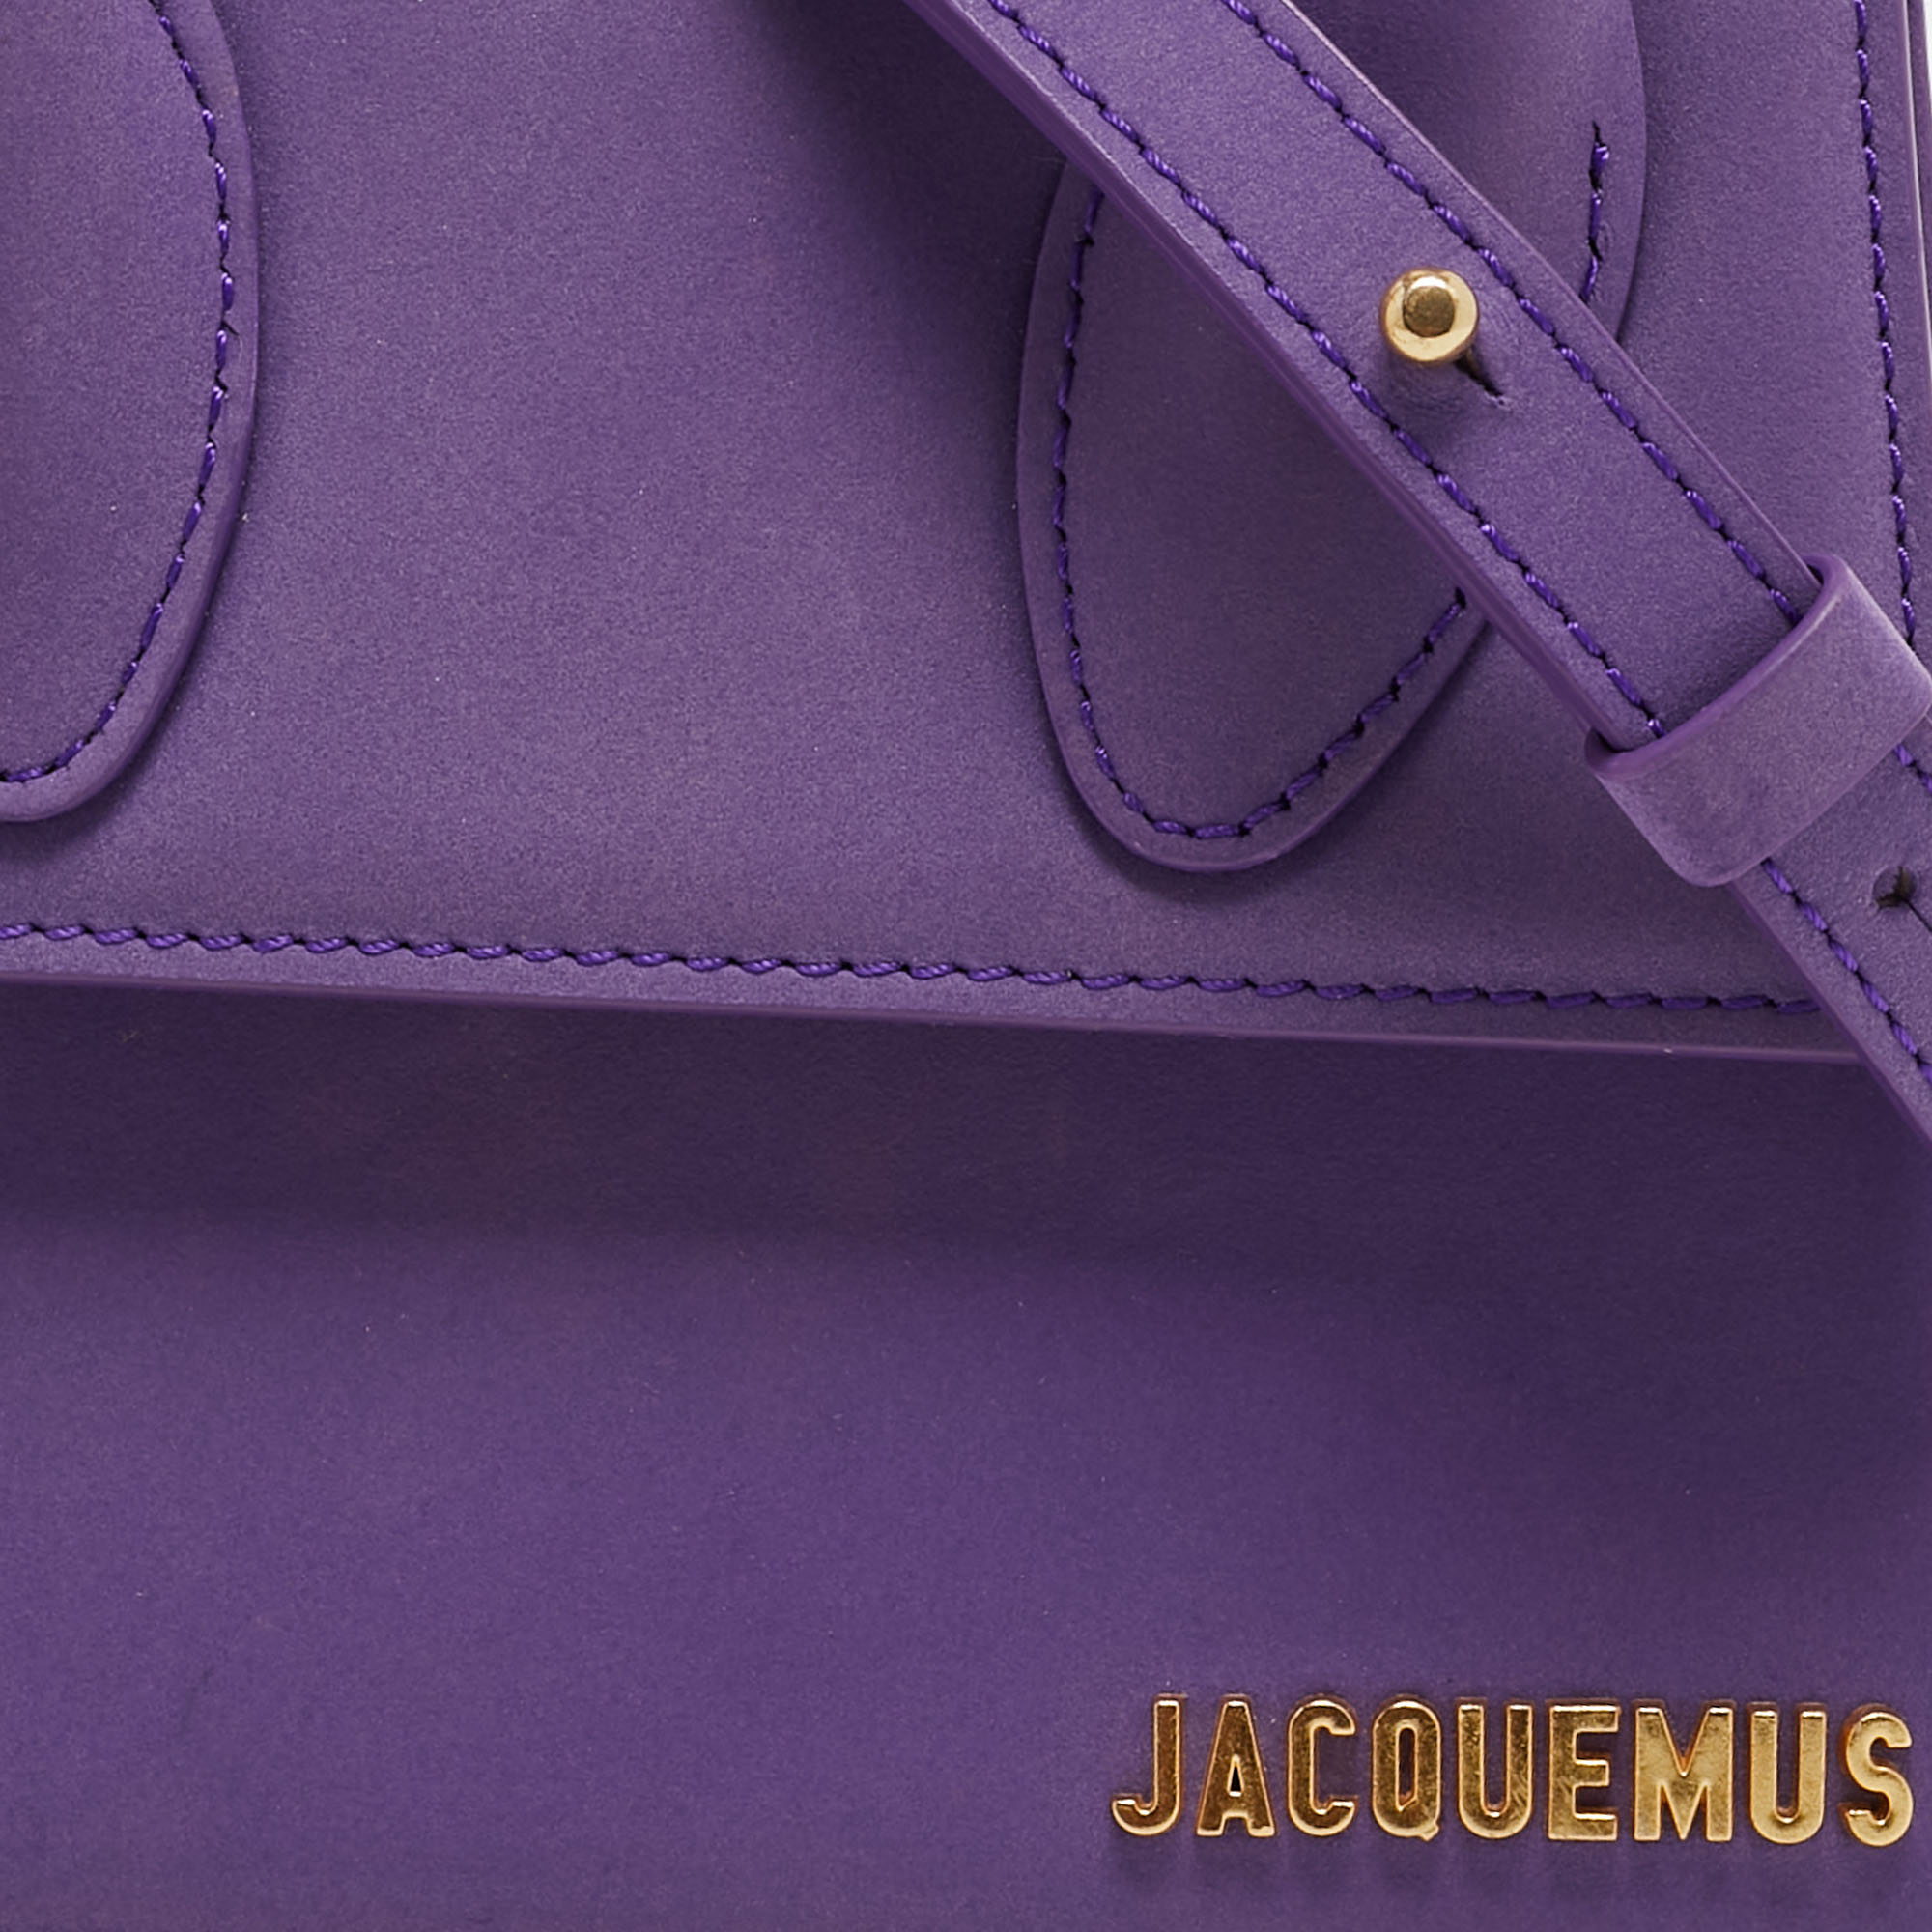 Jacquemus Purple Nubuck Leather Le Chiquito Moyen Top Handle Bag